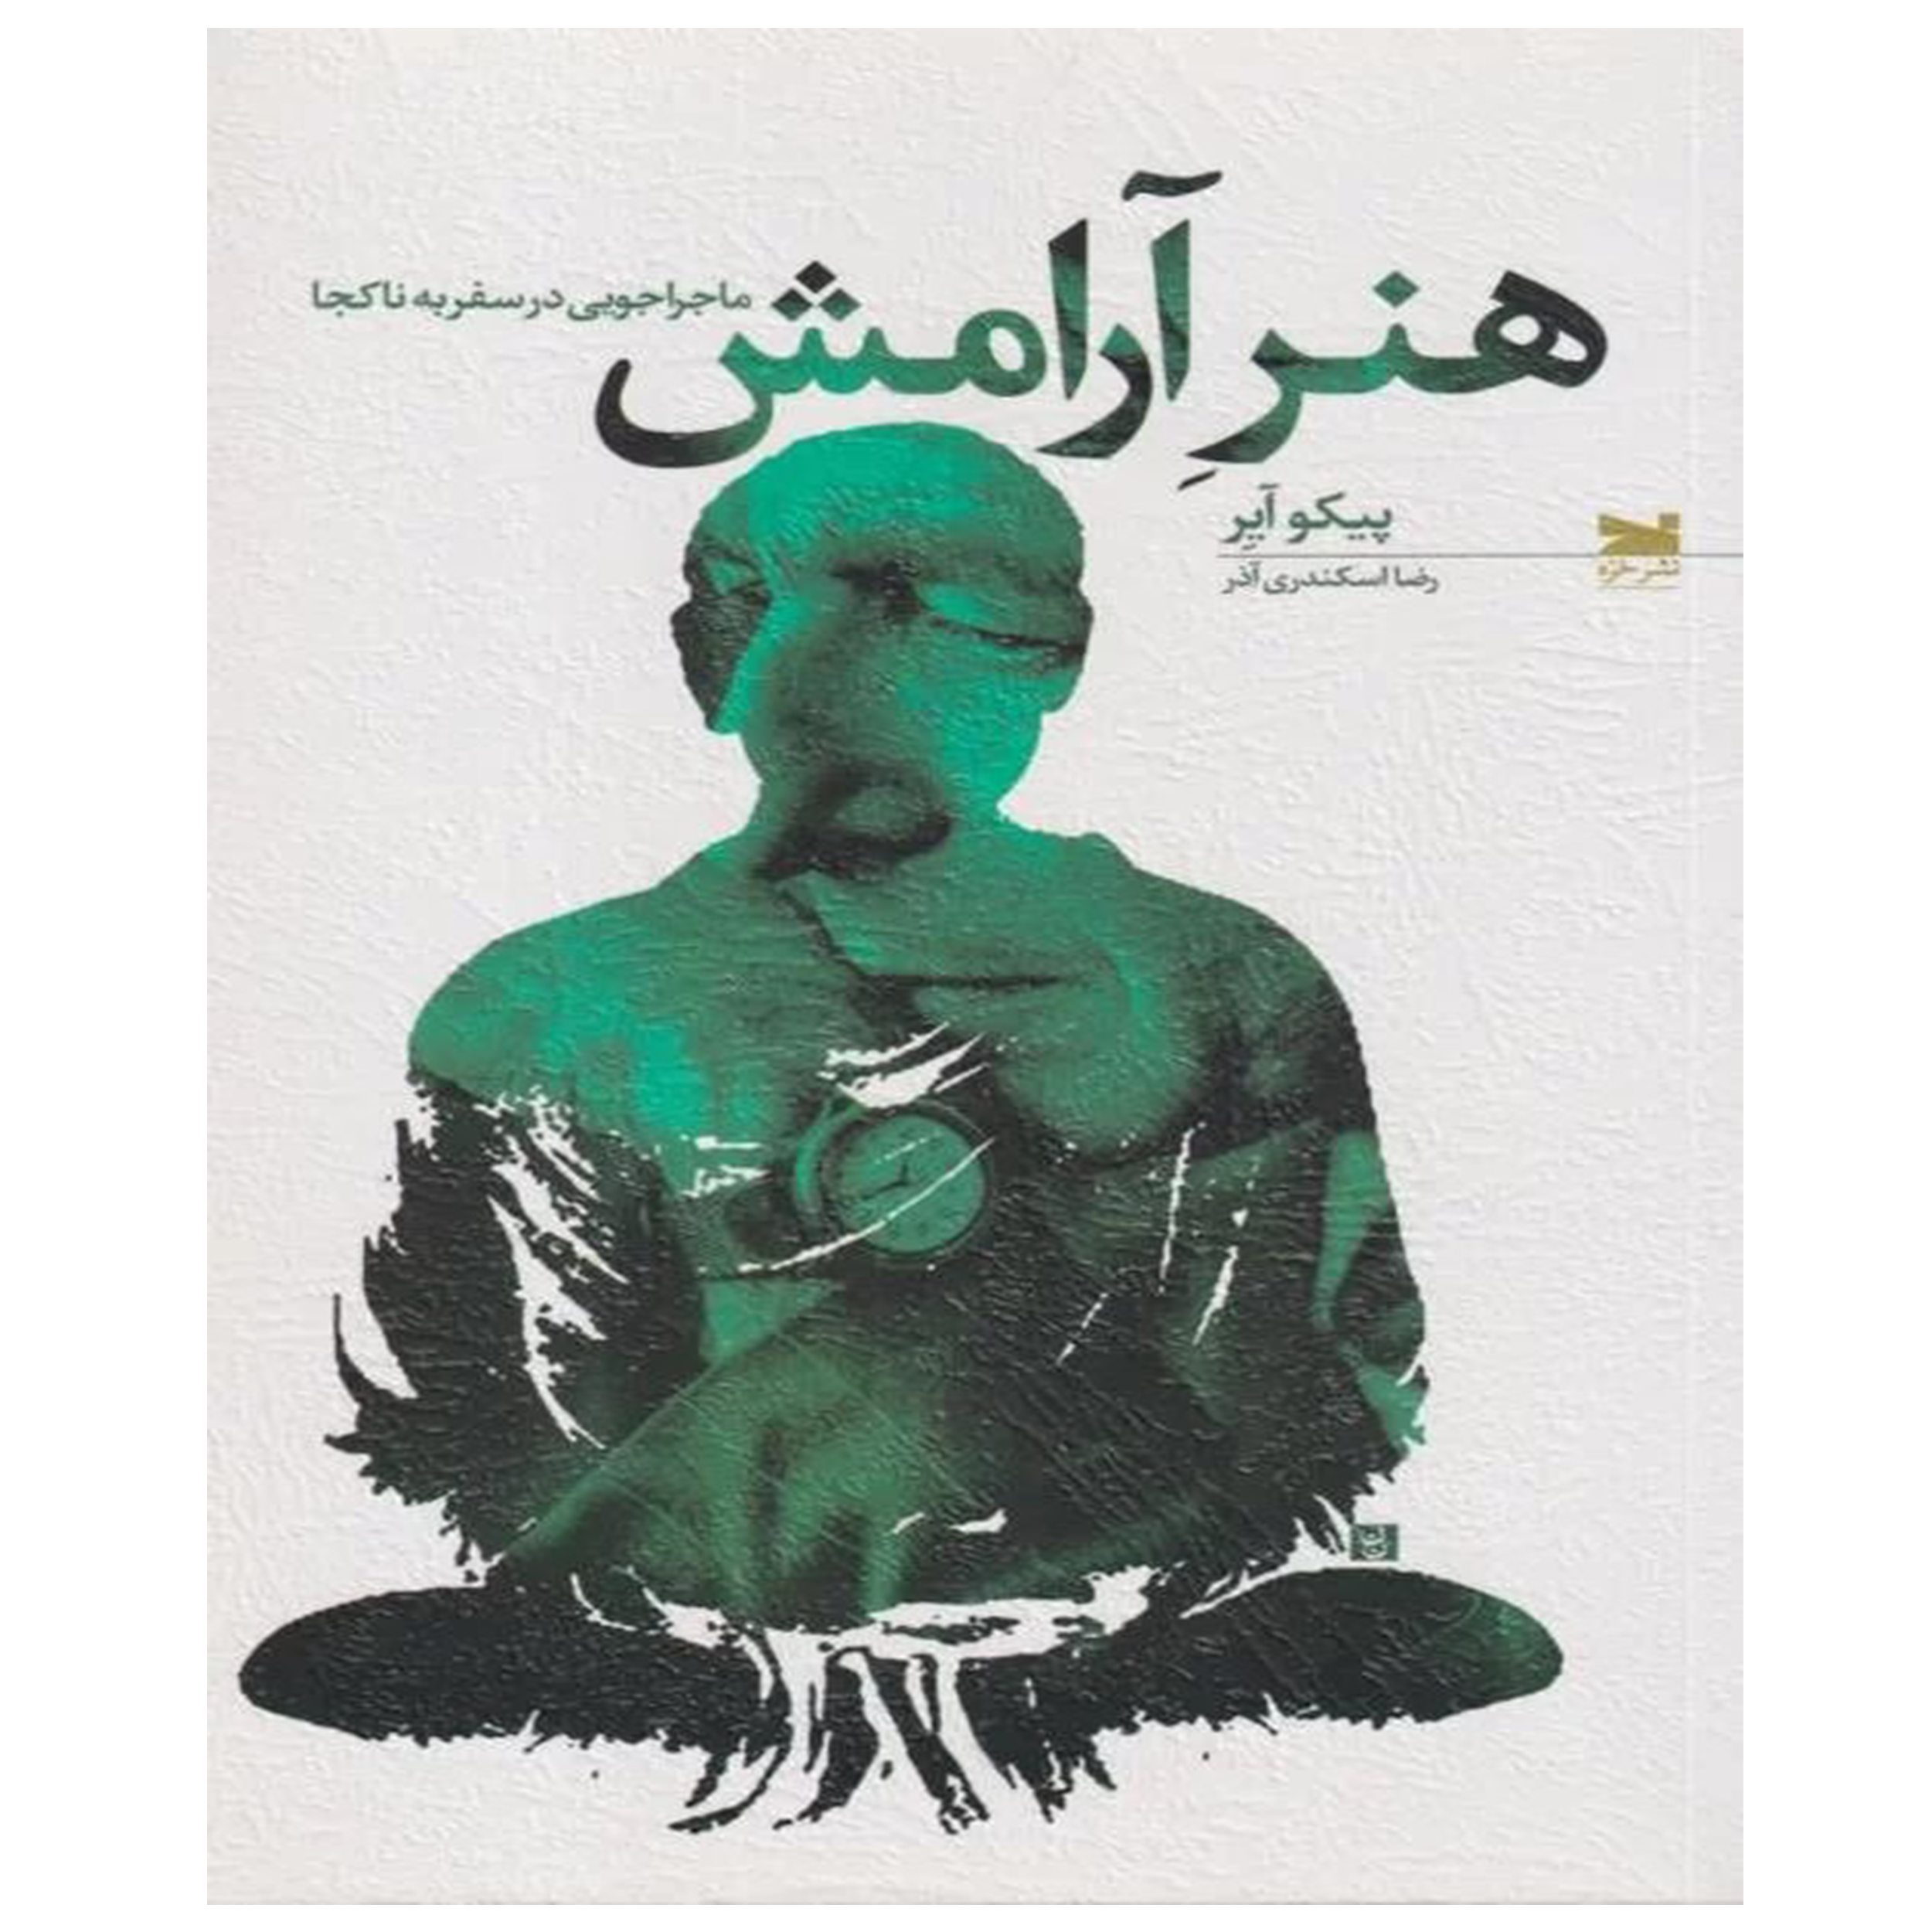 کتاب هنر آرامش ماجراجویی در سفر به ناکجا اثر پیکو آیر انتشارات
خزه